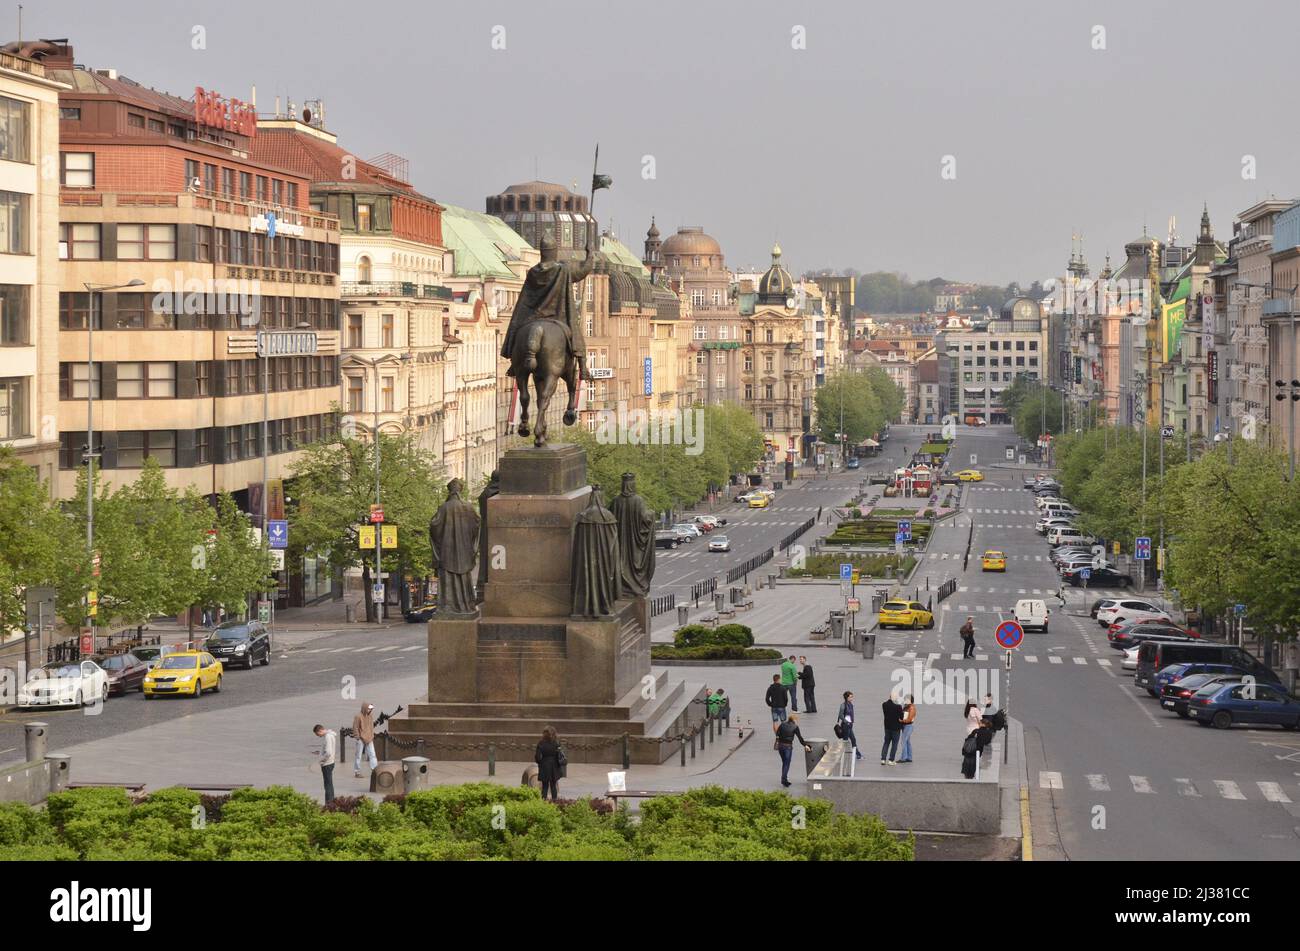 Piazza Venceslao con la statua di San Venceslao, viale principale della Repubblica Ceca di Praga. Foto Stock